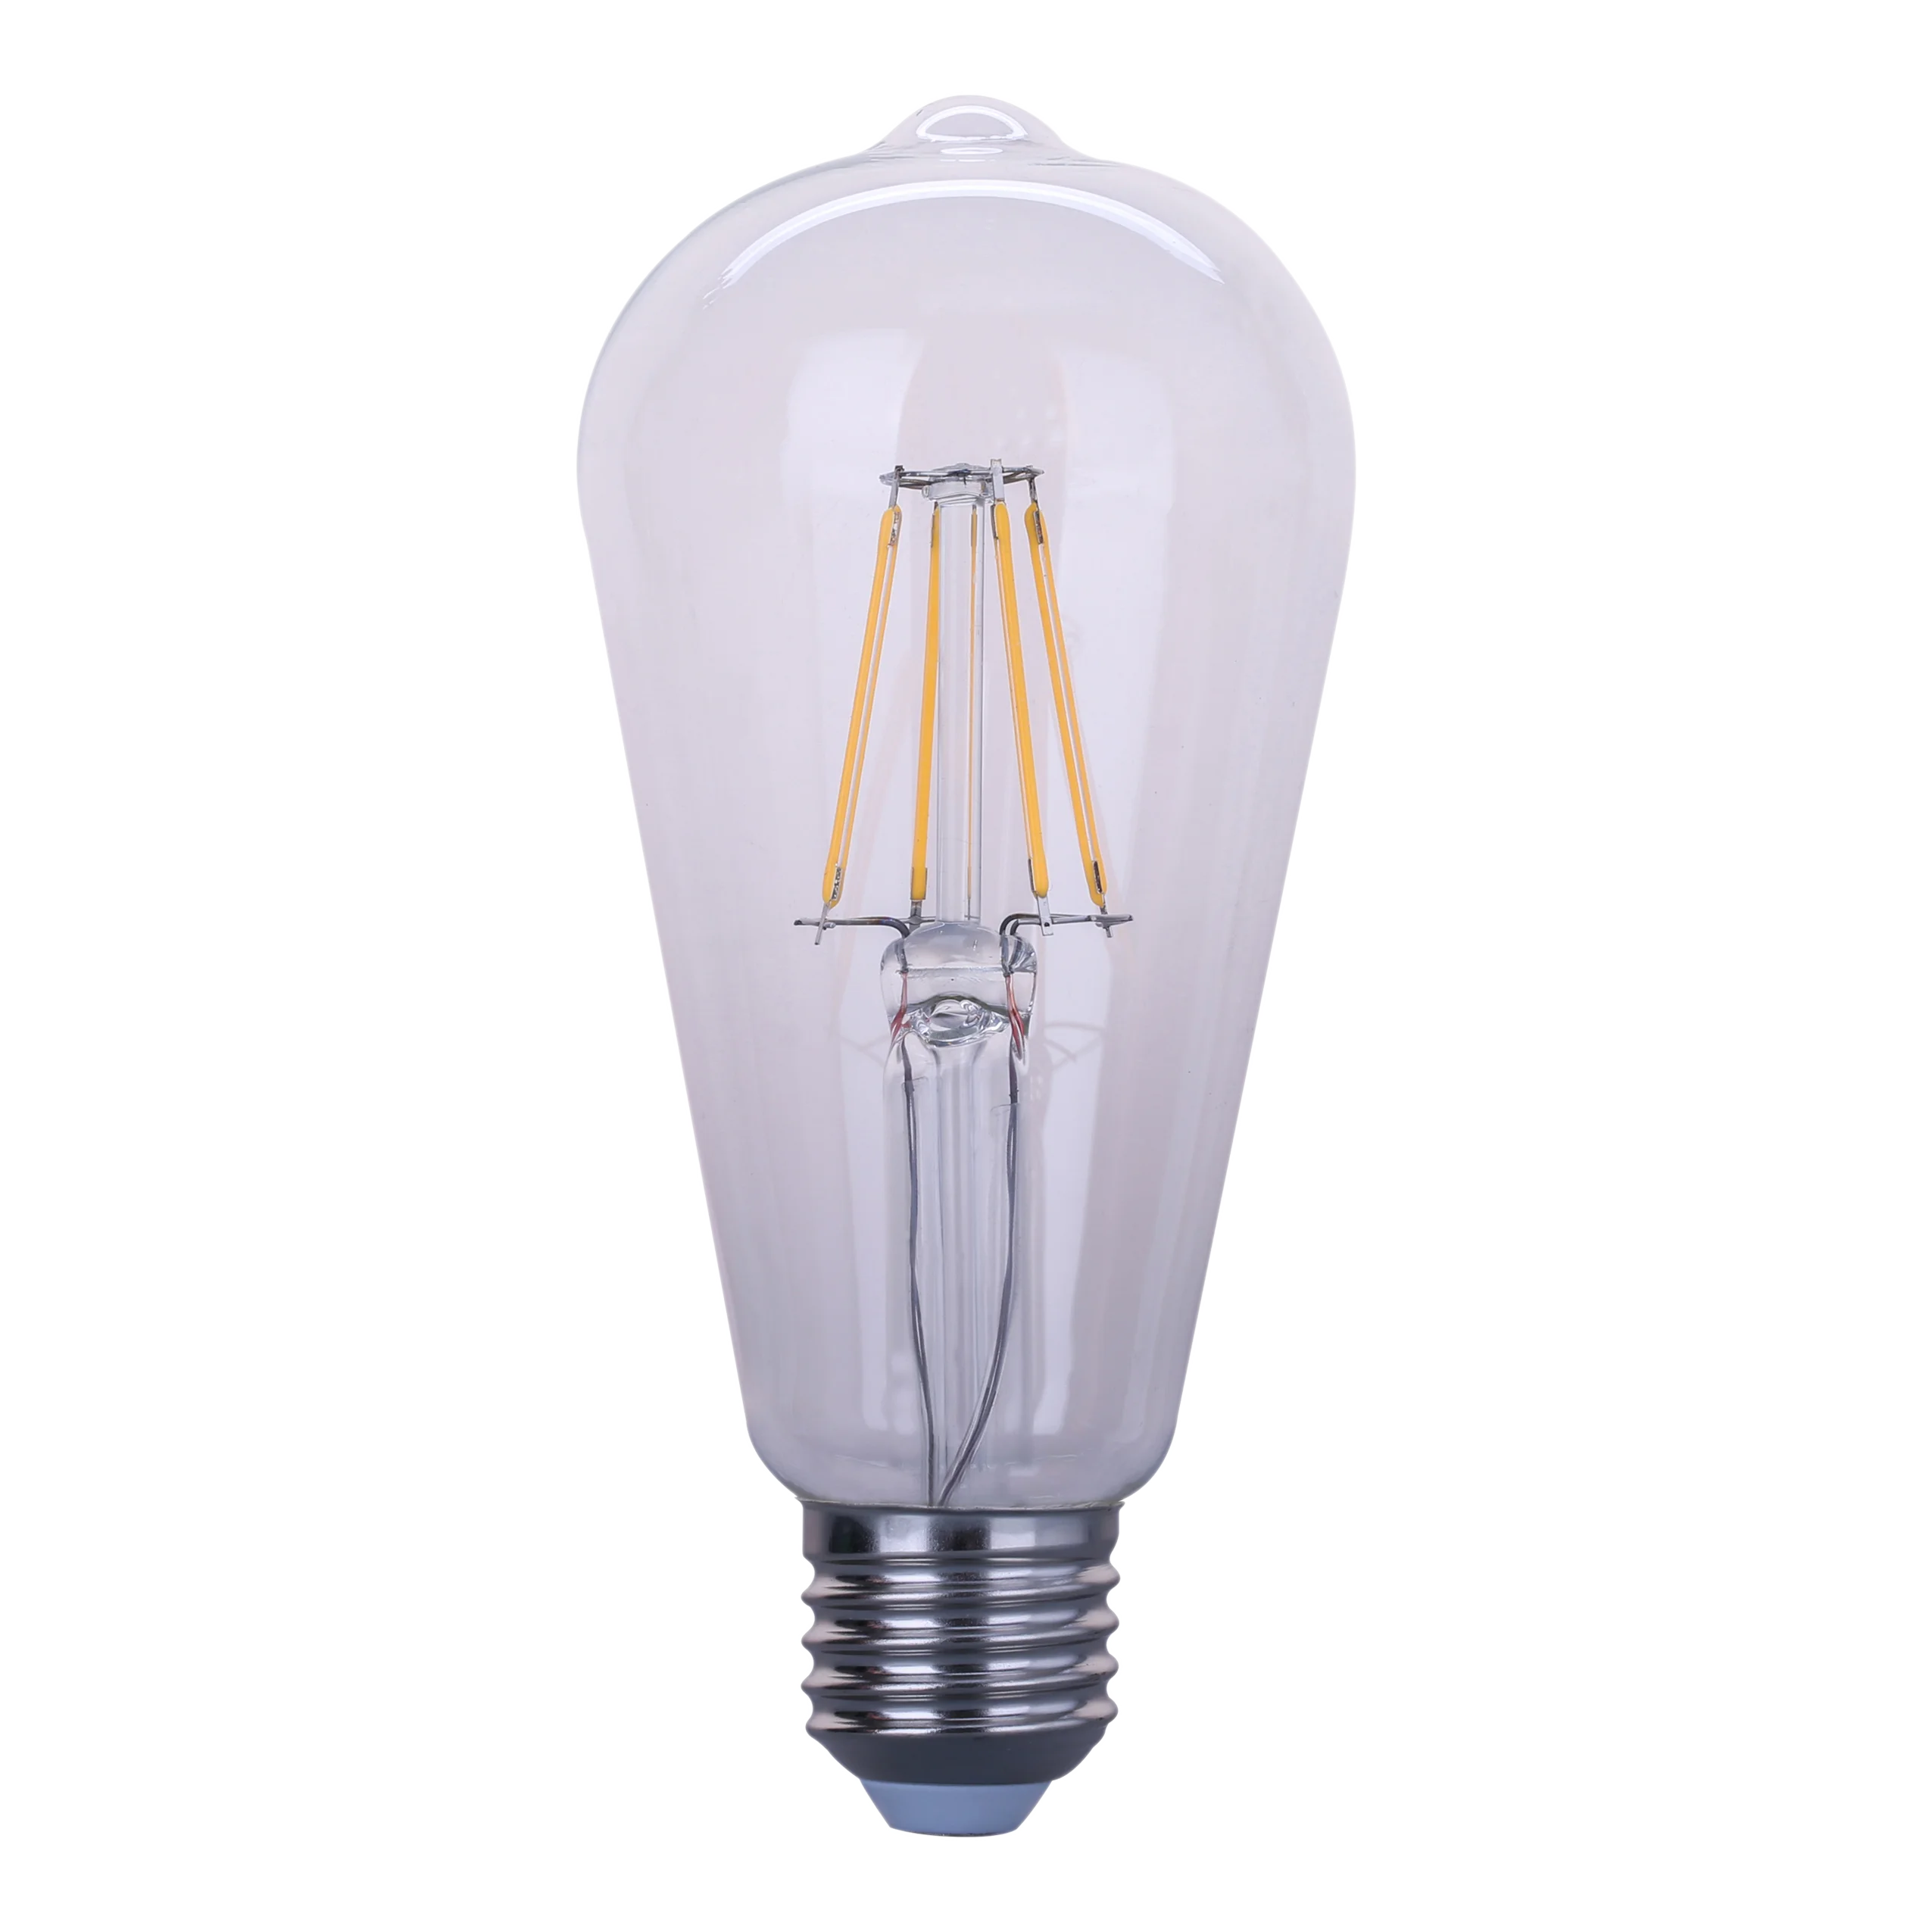 China Supplier Decorative Light E12 E14 E26 E27 A60 Led Filament Bulb, 2W 4W 6W 8W 10W 12W 15W A60 Led Filament Bulb Light